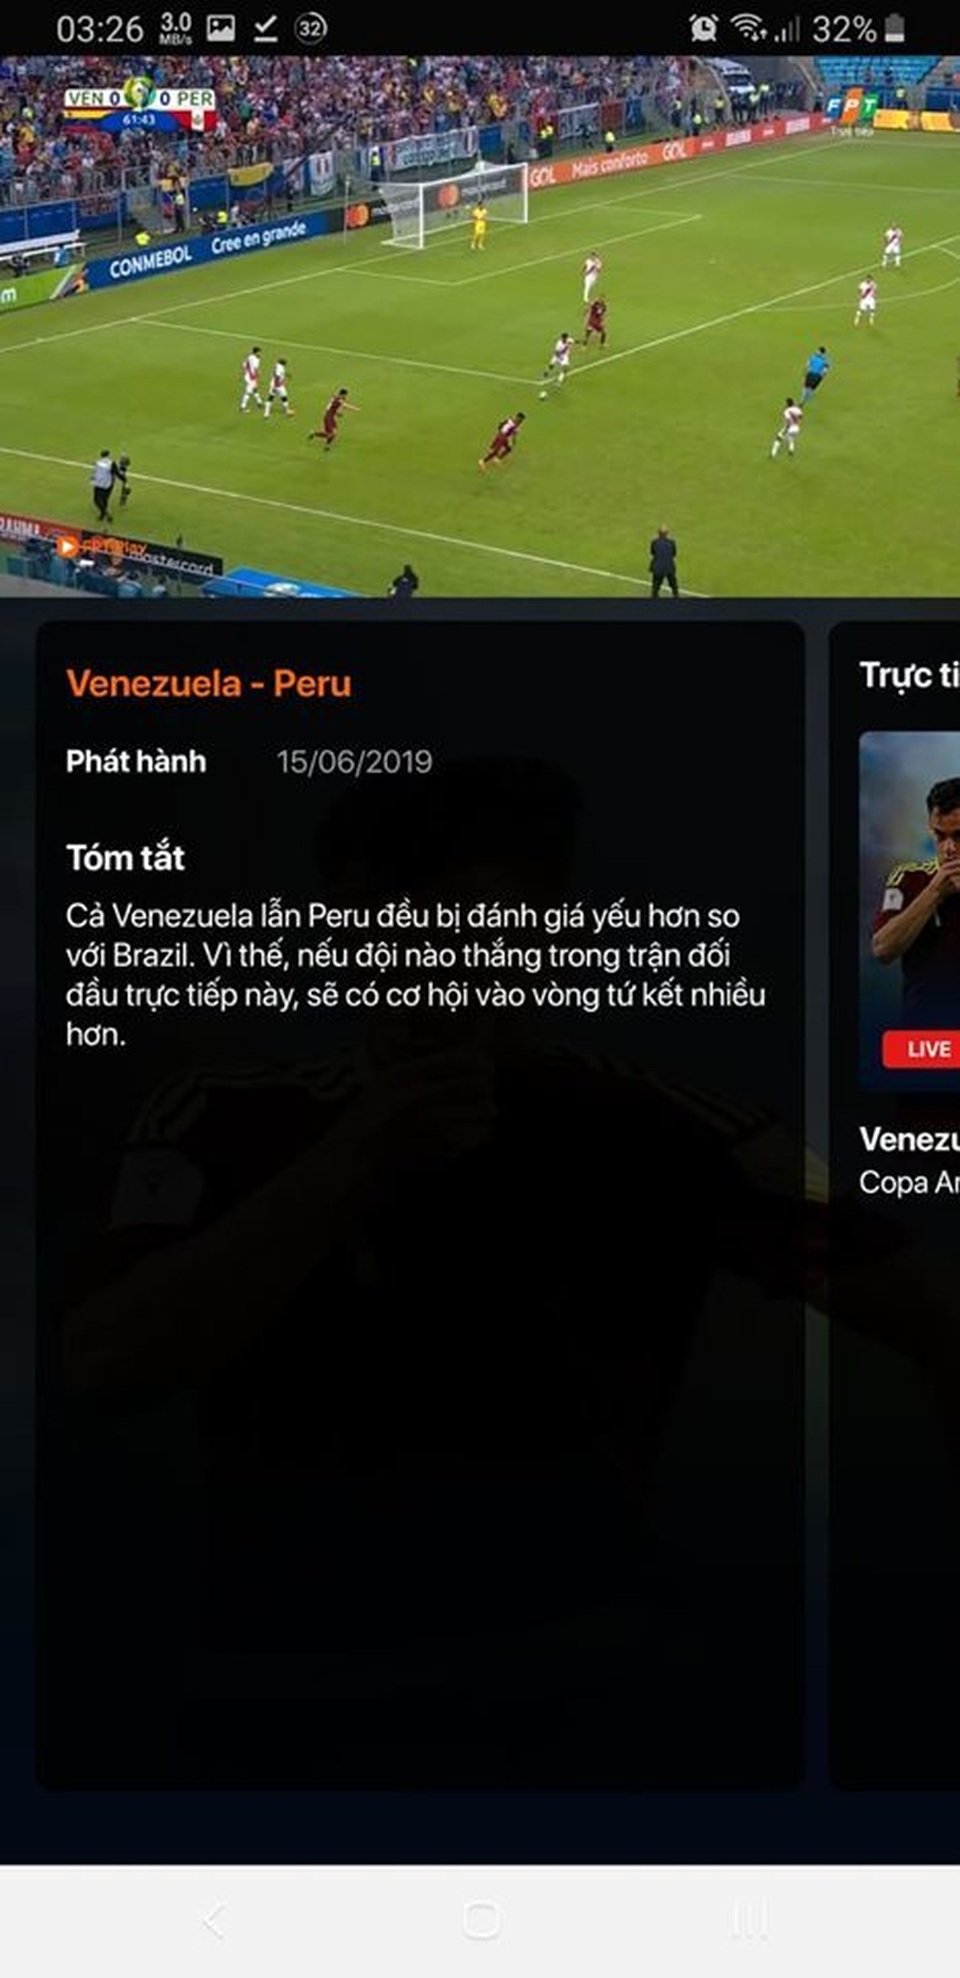 Hướng dẫn xem trực tiếp các trận đấu tại Copa America 2019 trên smartphone và máy tính - 2